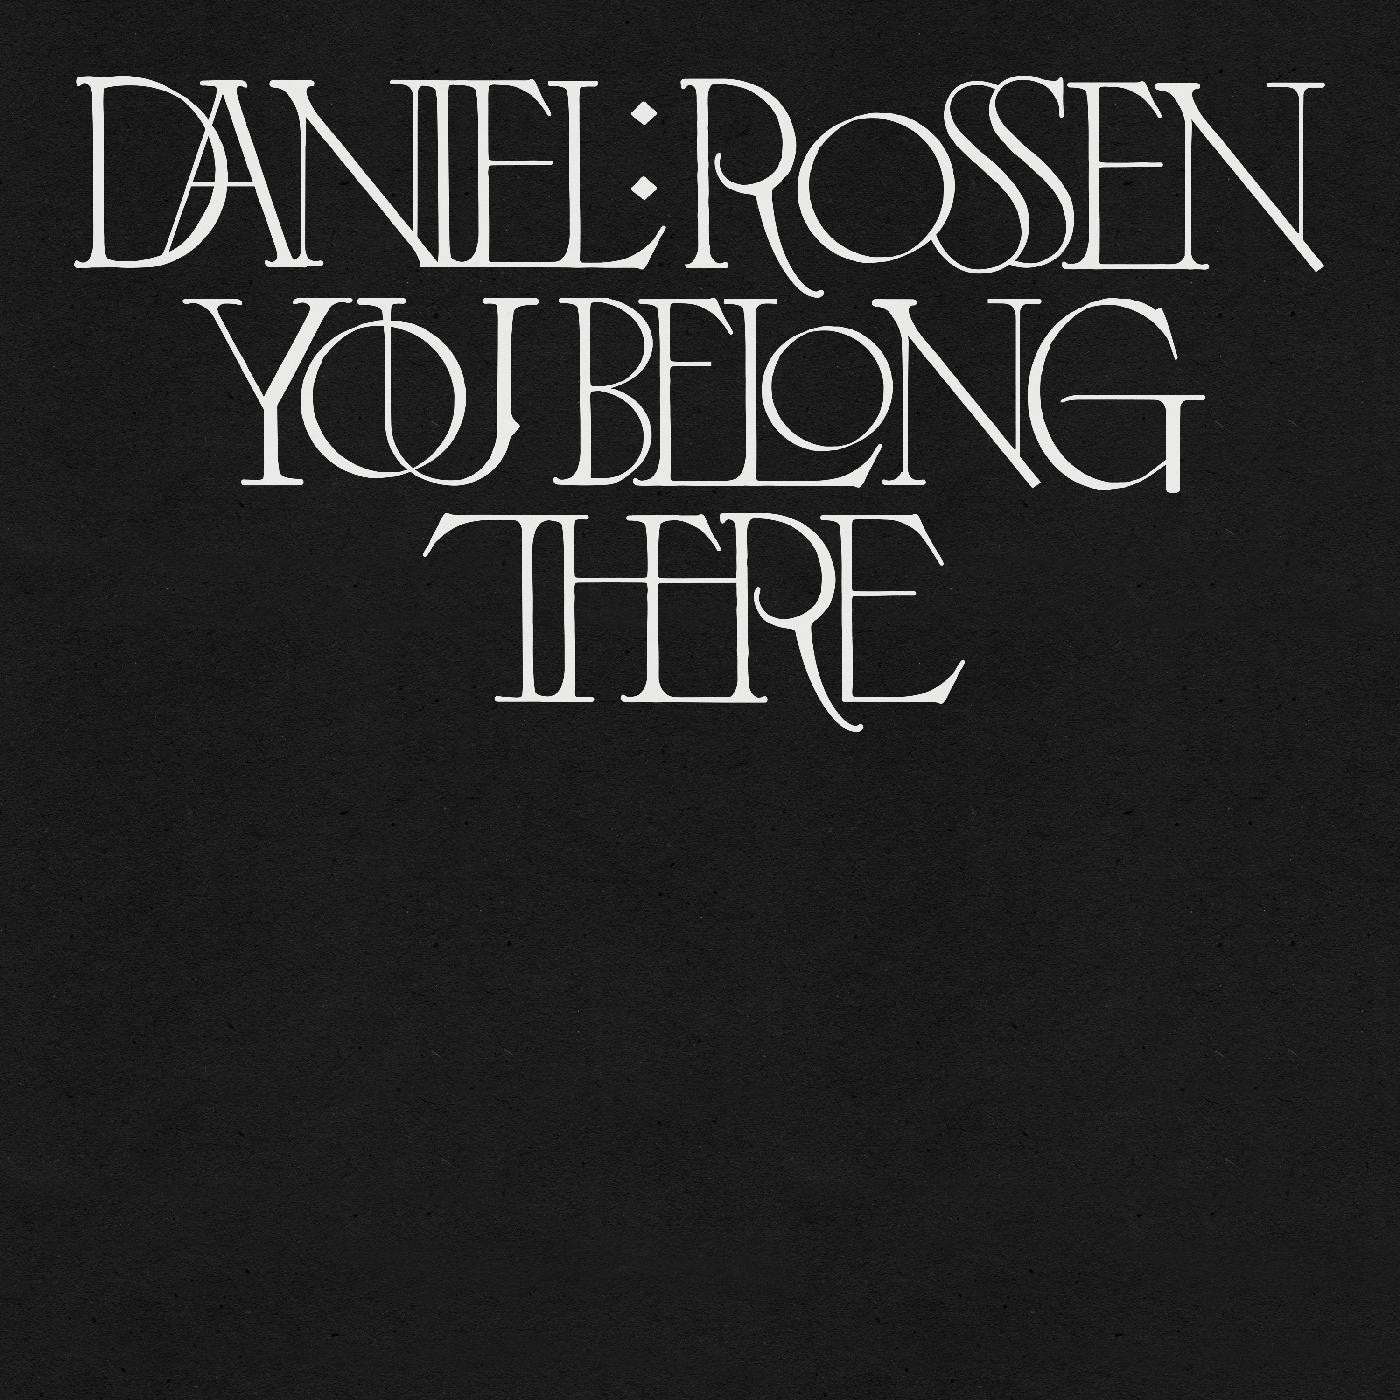 Rossen, Daniel  - You Belong There (Gold Vinyl)